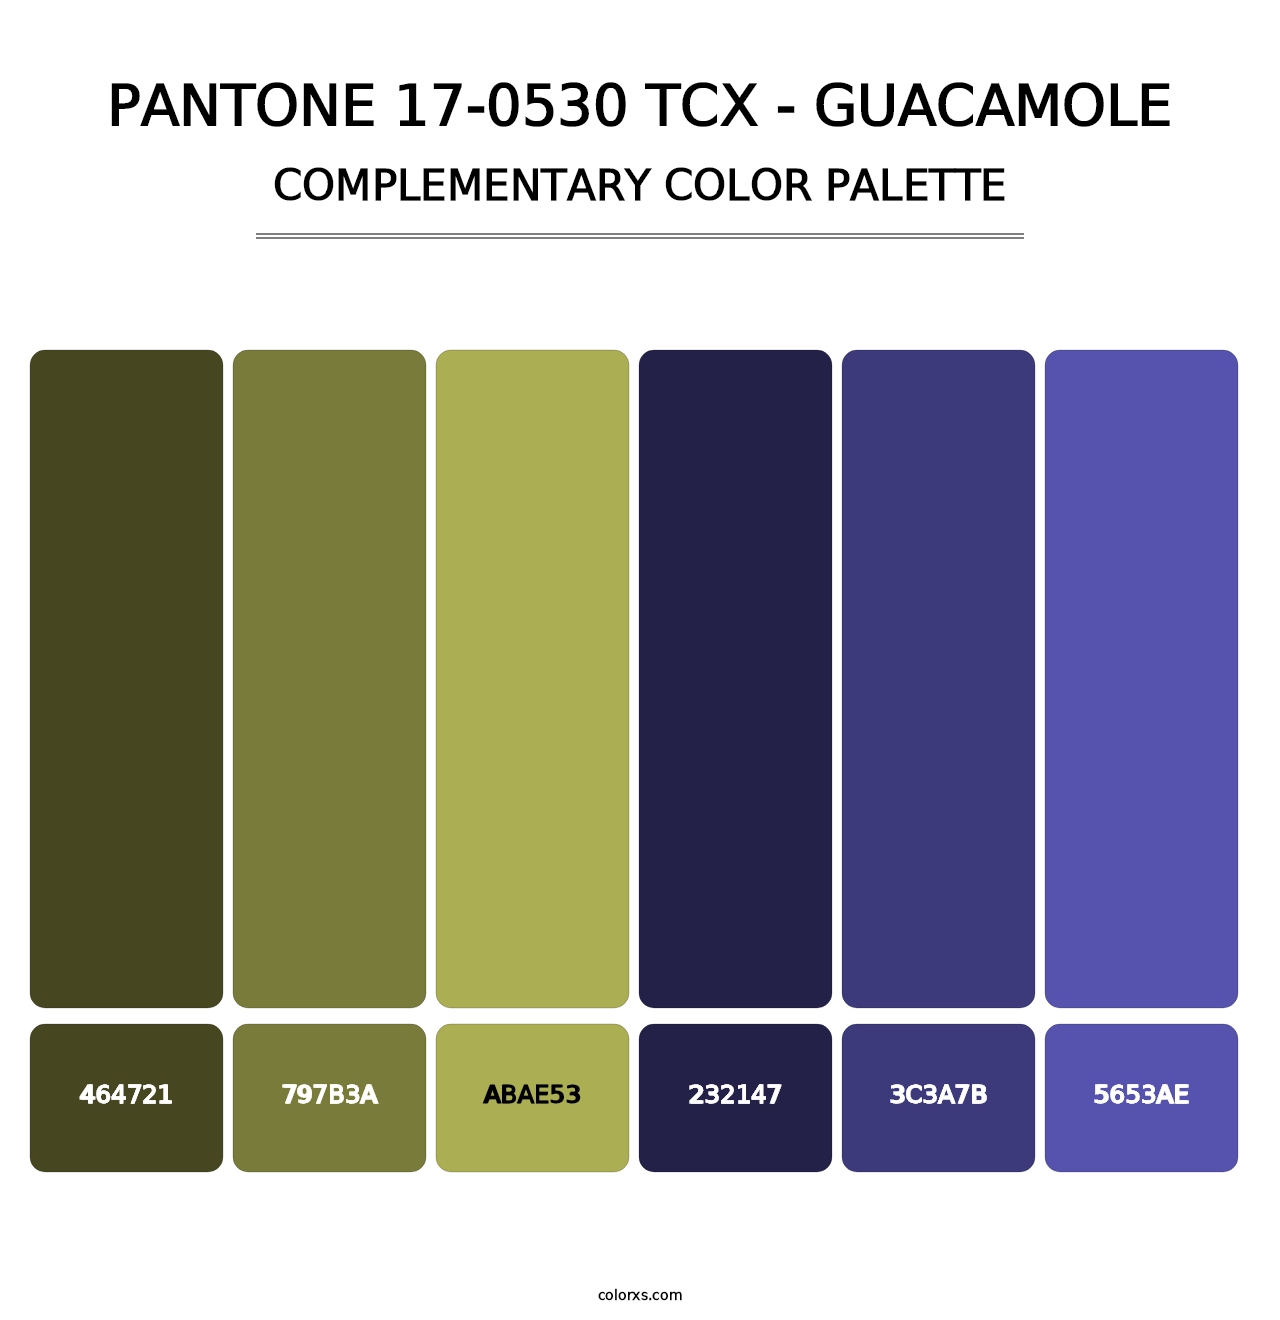 PANTONE 17-0530 TCX - Guacamole - Complementary Color Palette